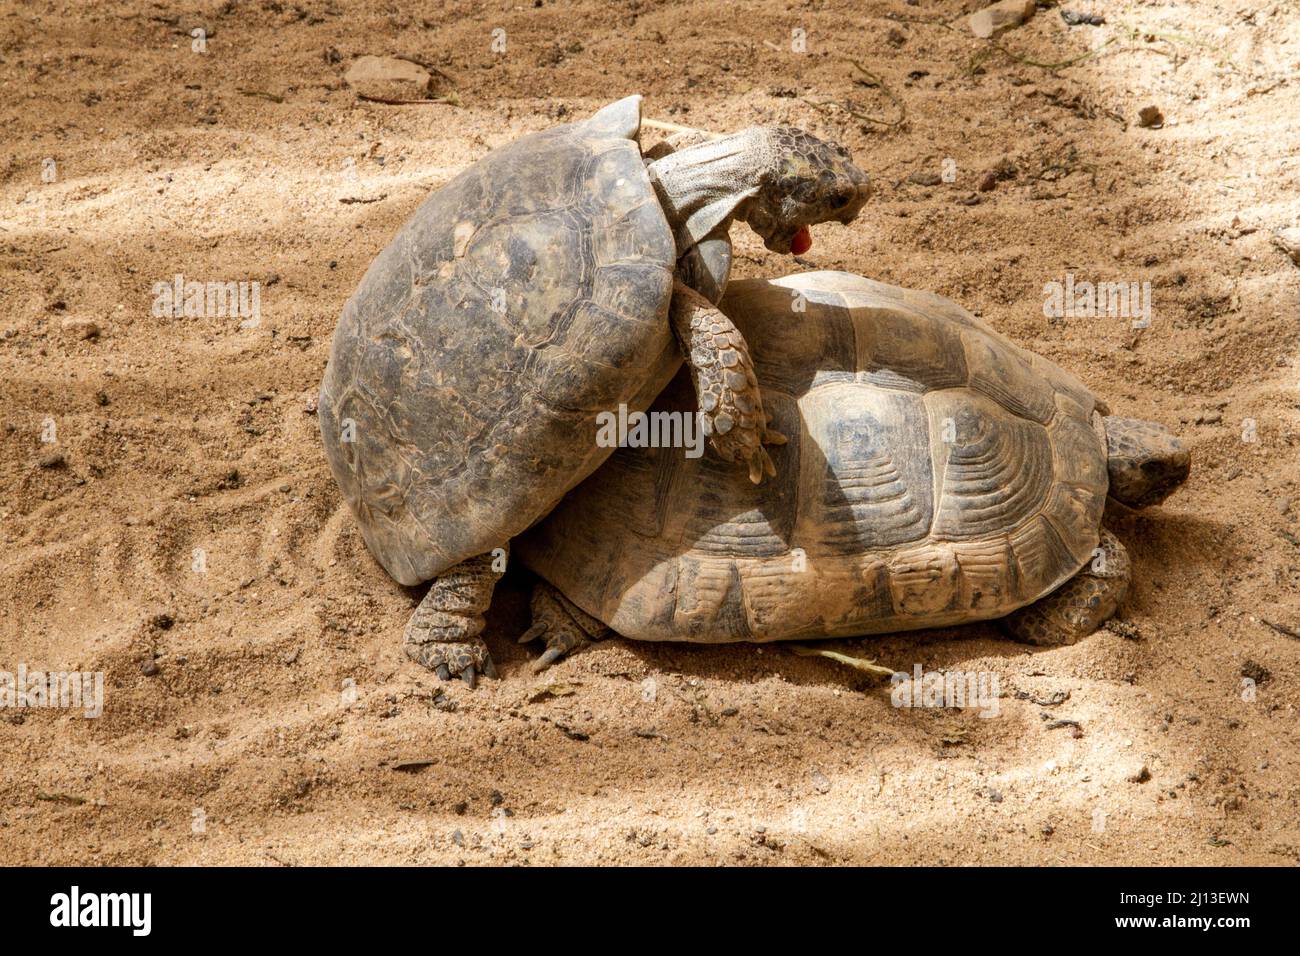 Mating Couple Kleinmann's tortoise (Testudo kleinmanni), also called commonly the Egyptian tortoise, Leith's tortoise, and the Negev tortoise, [The Ne Stock Photo